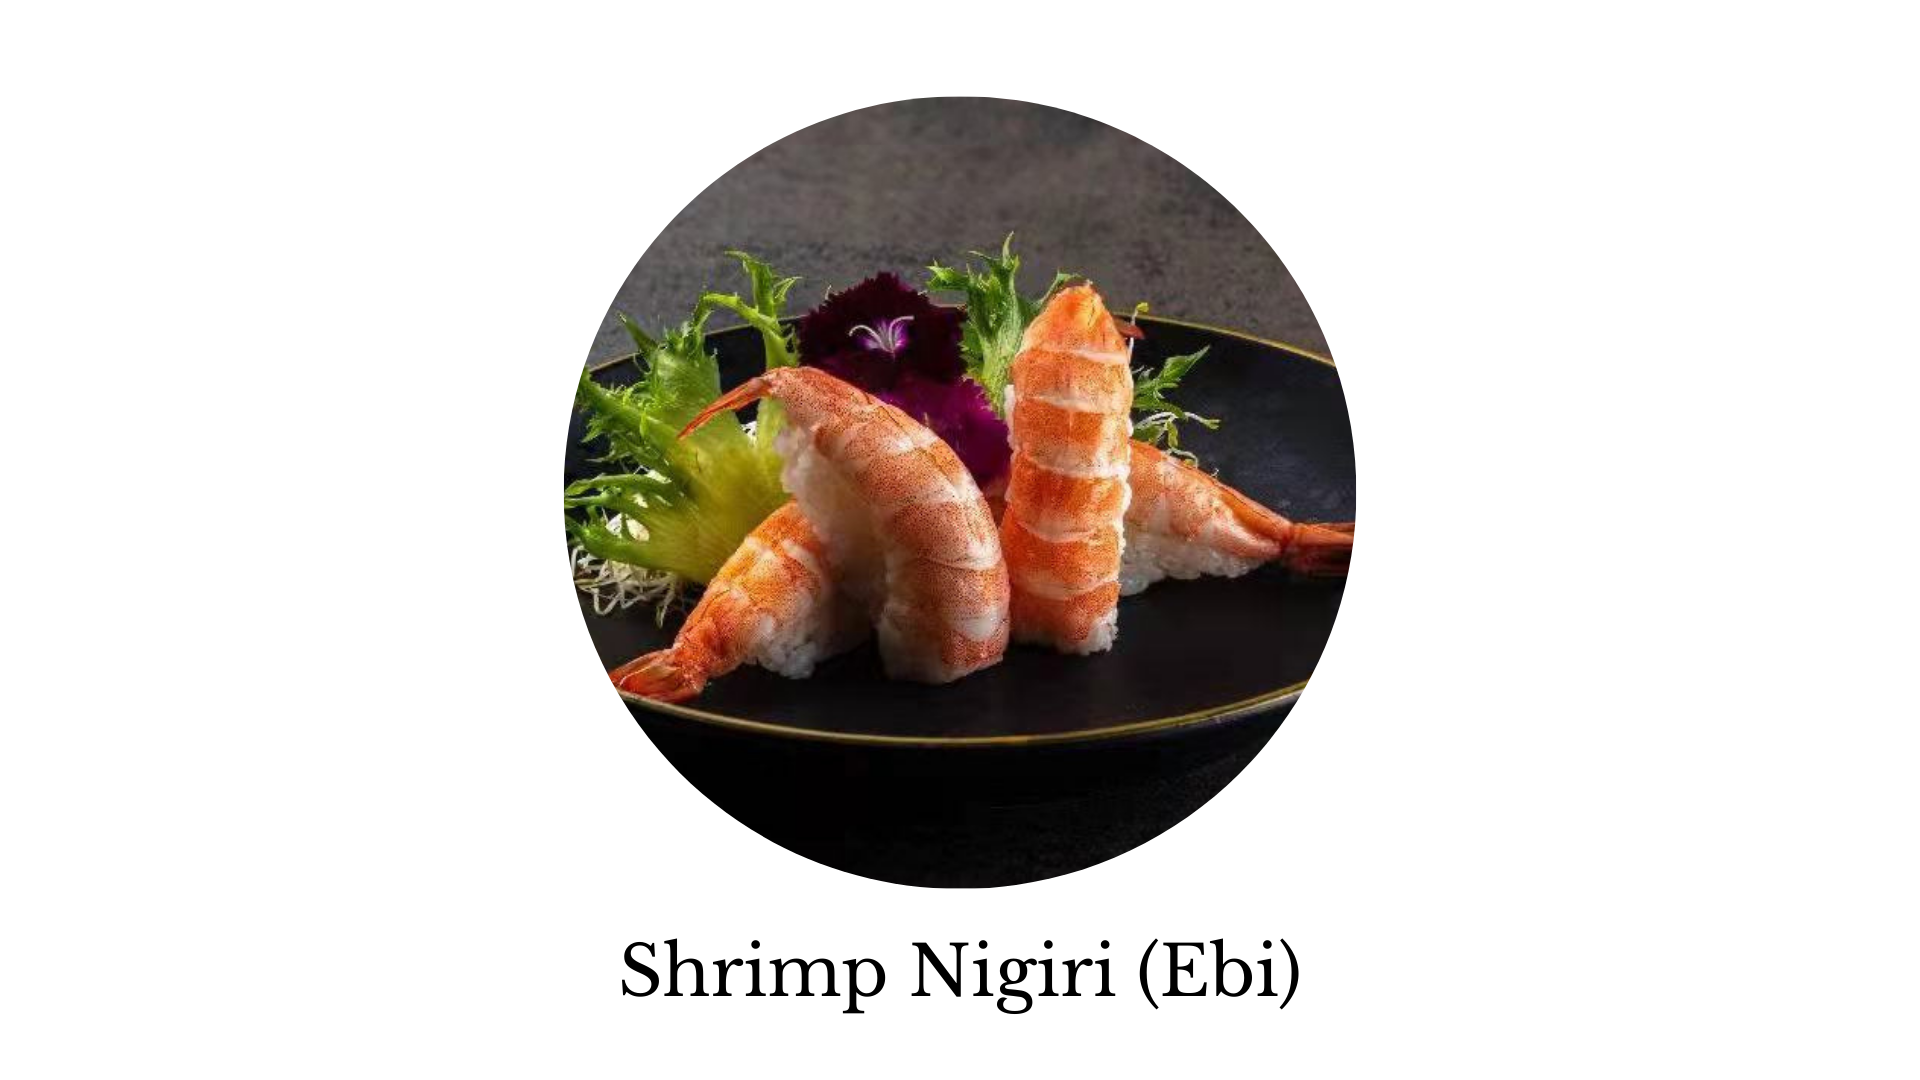 shrimp nigiri, ebi, sushi, sashimi, sushi near me, sushi places near me, best sushi near me, sushi rice